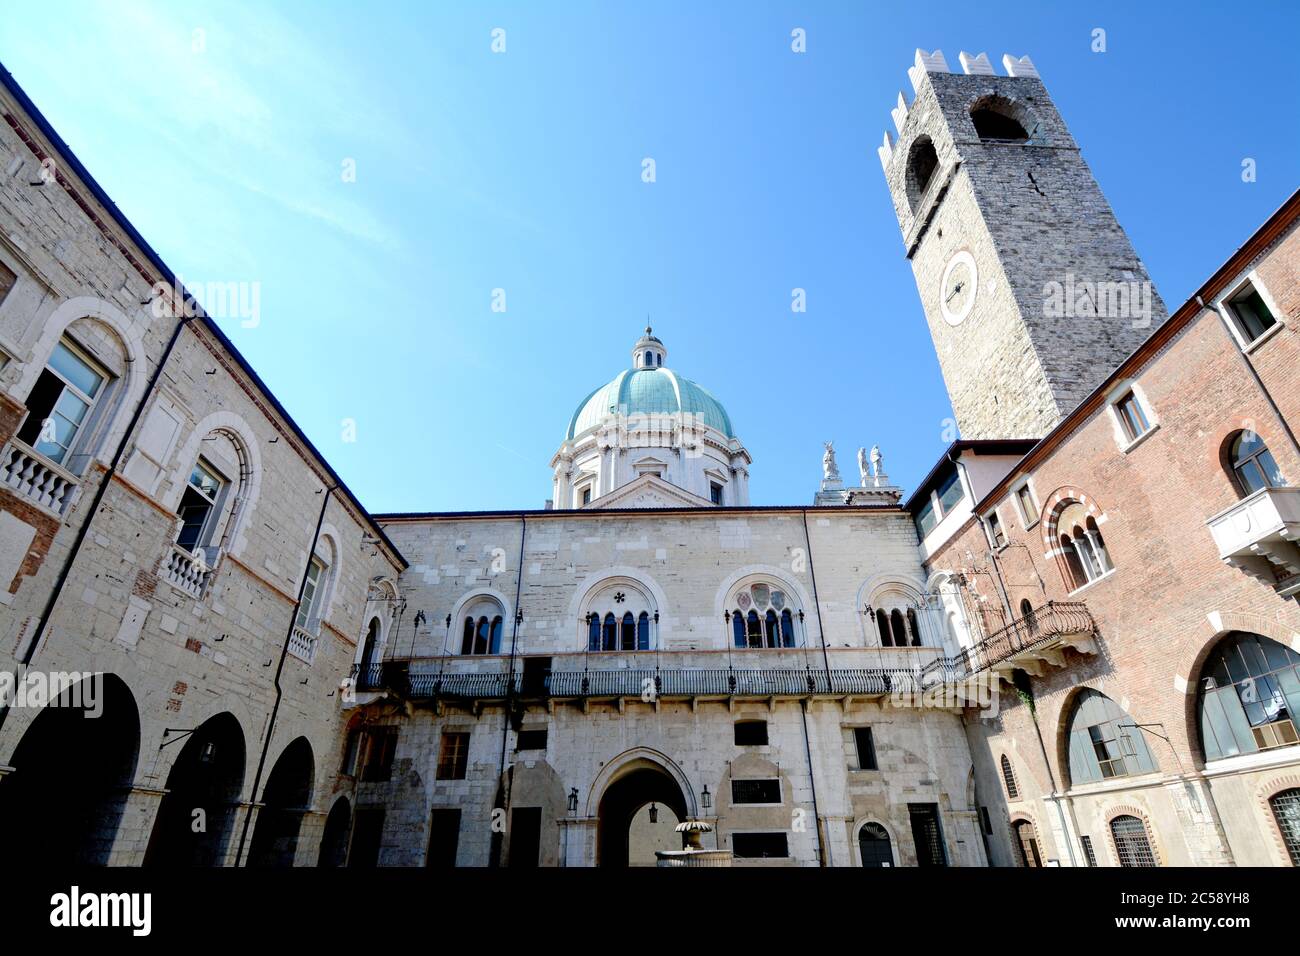 Le palais de Broletto, qui est maintenant l'office public de l'hôtel de ville de Brescia, est très ancien et est en architecture romane. Le dôme du Duomo pr Banque D'Images